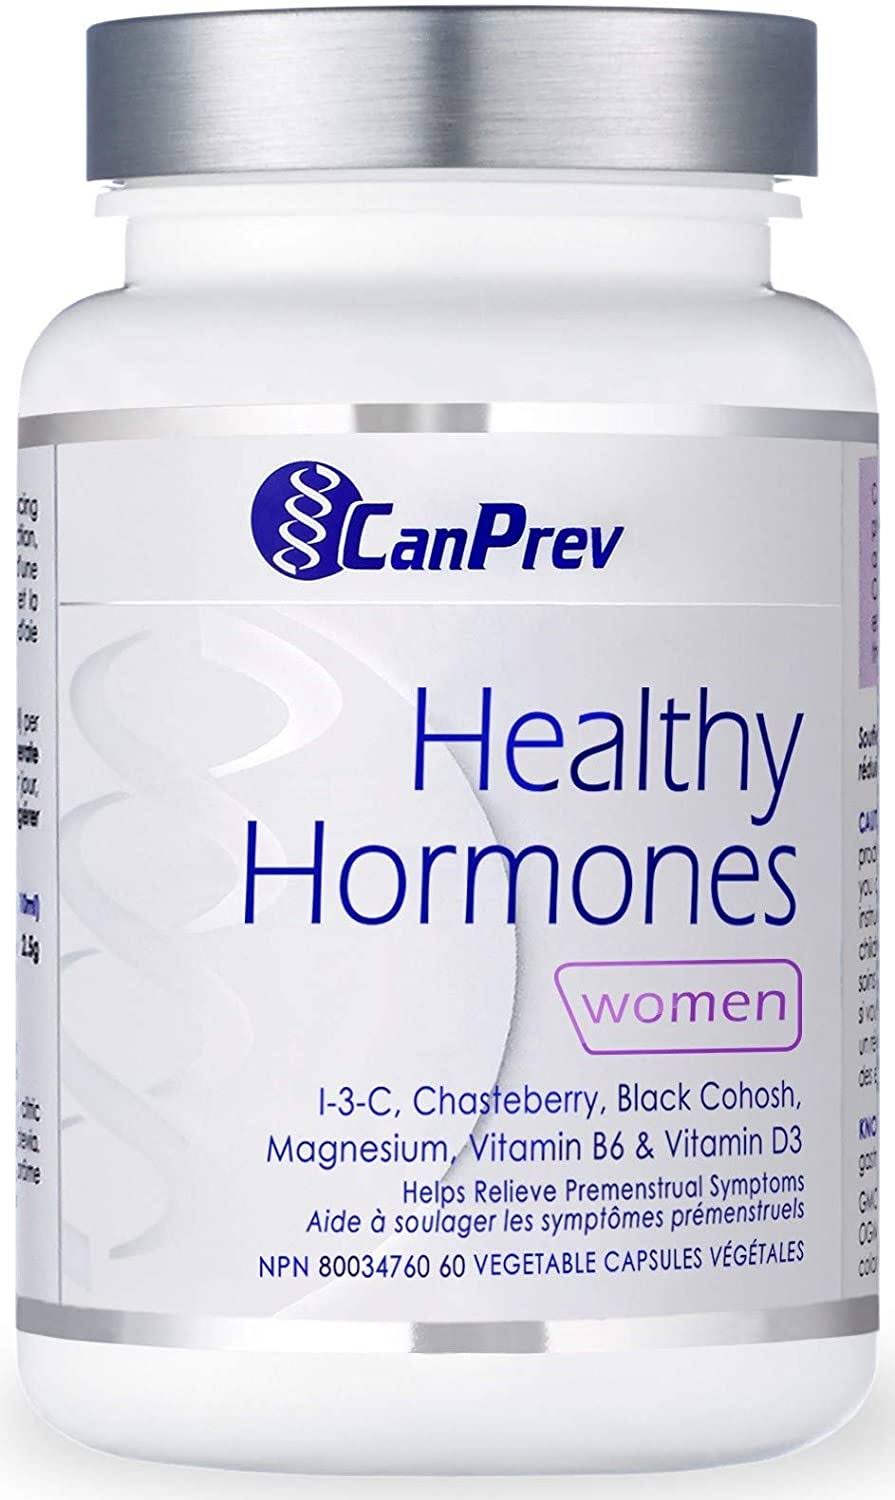 CanPrev Healthy Hormones Vegi Capsules, 60 Count